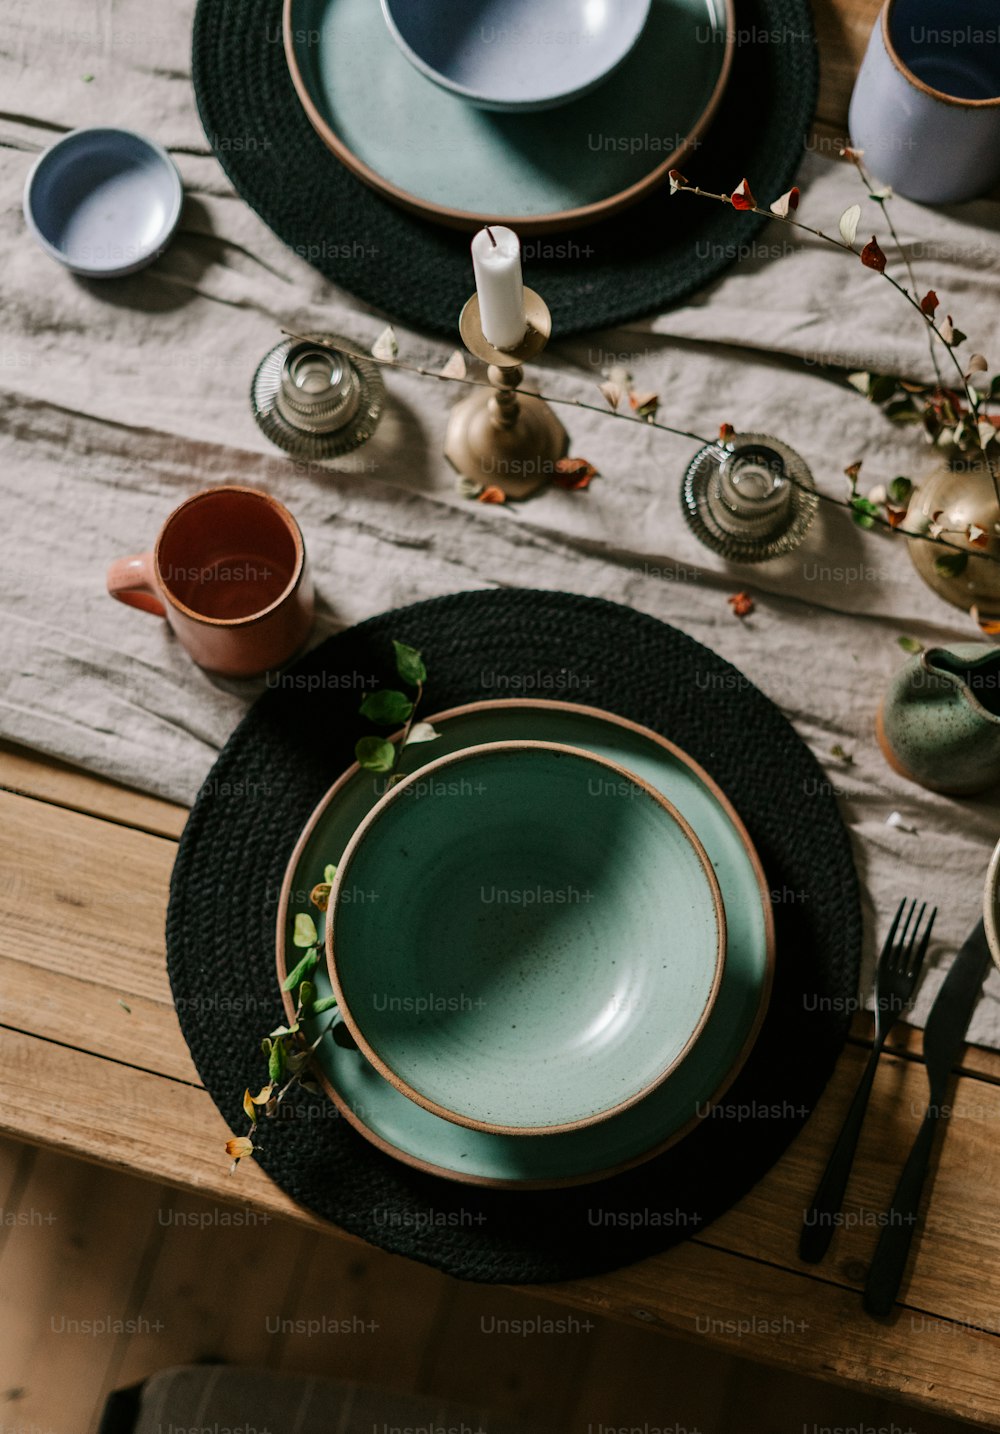 Un juego de mesa con platos, tazas y utensilios